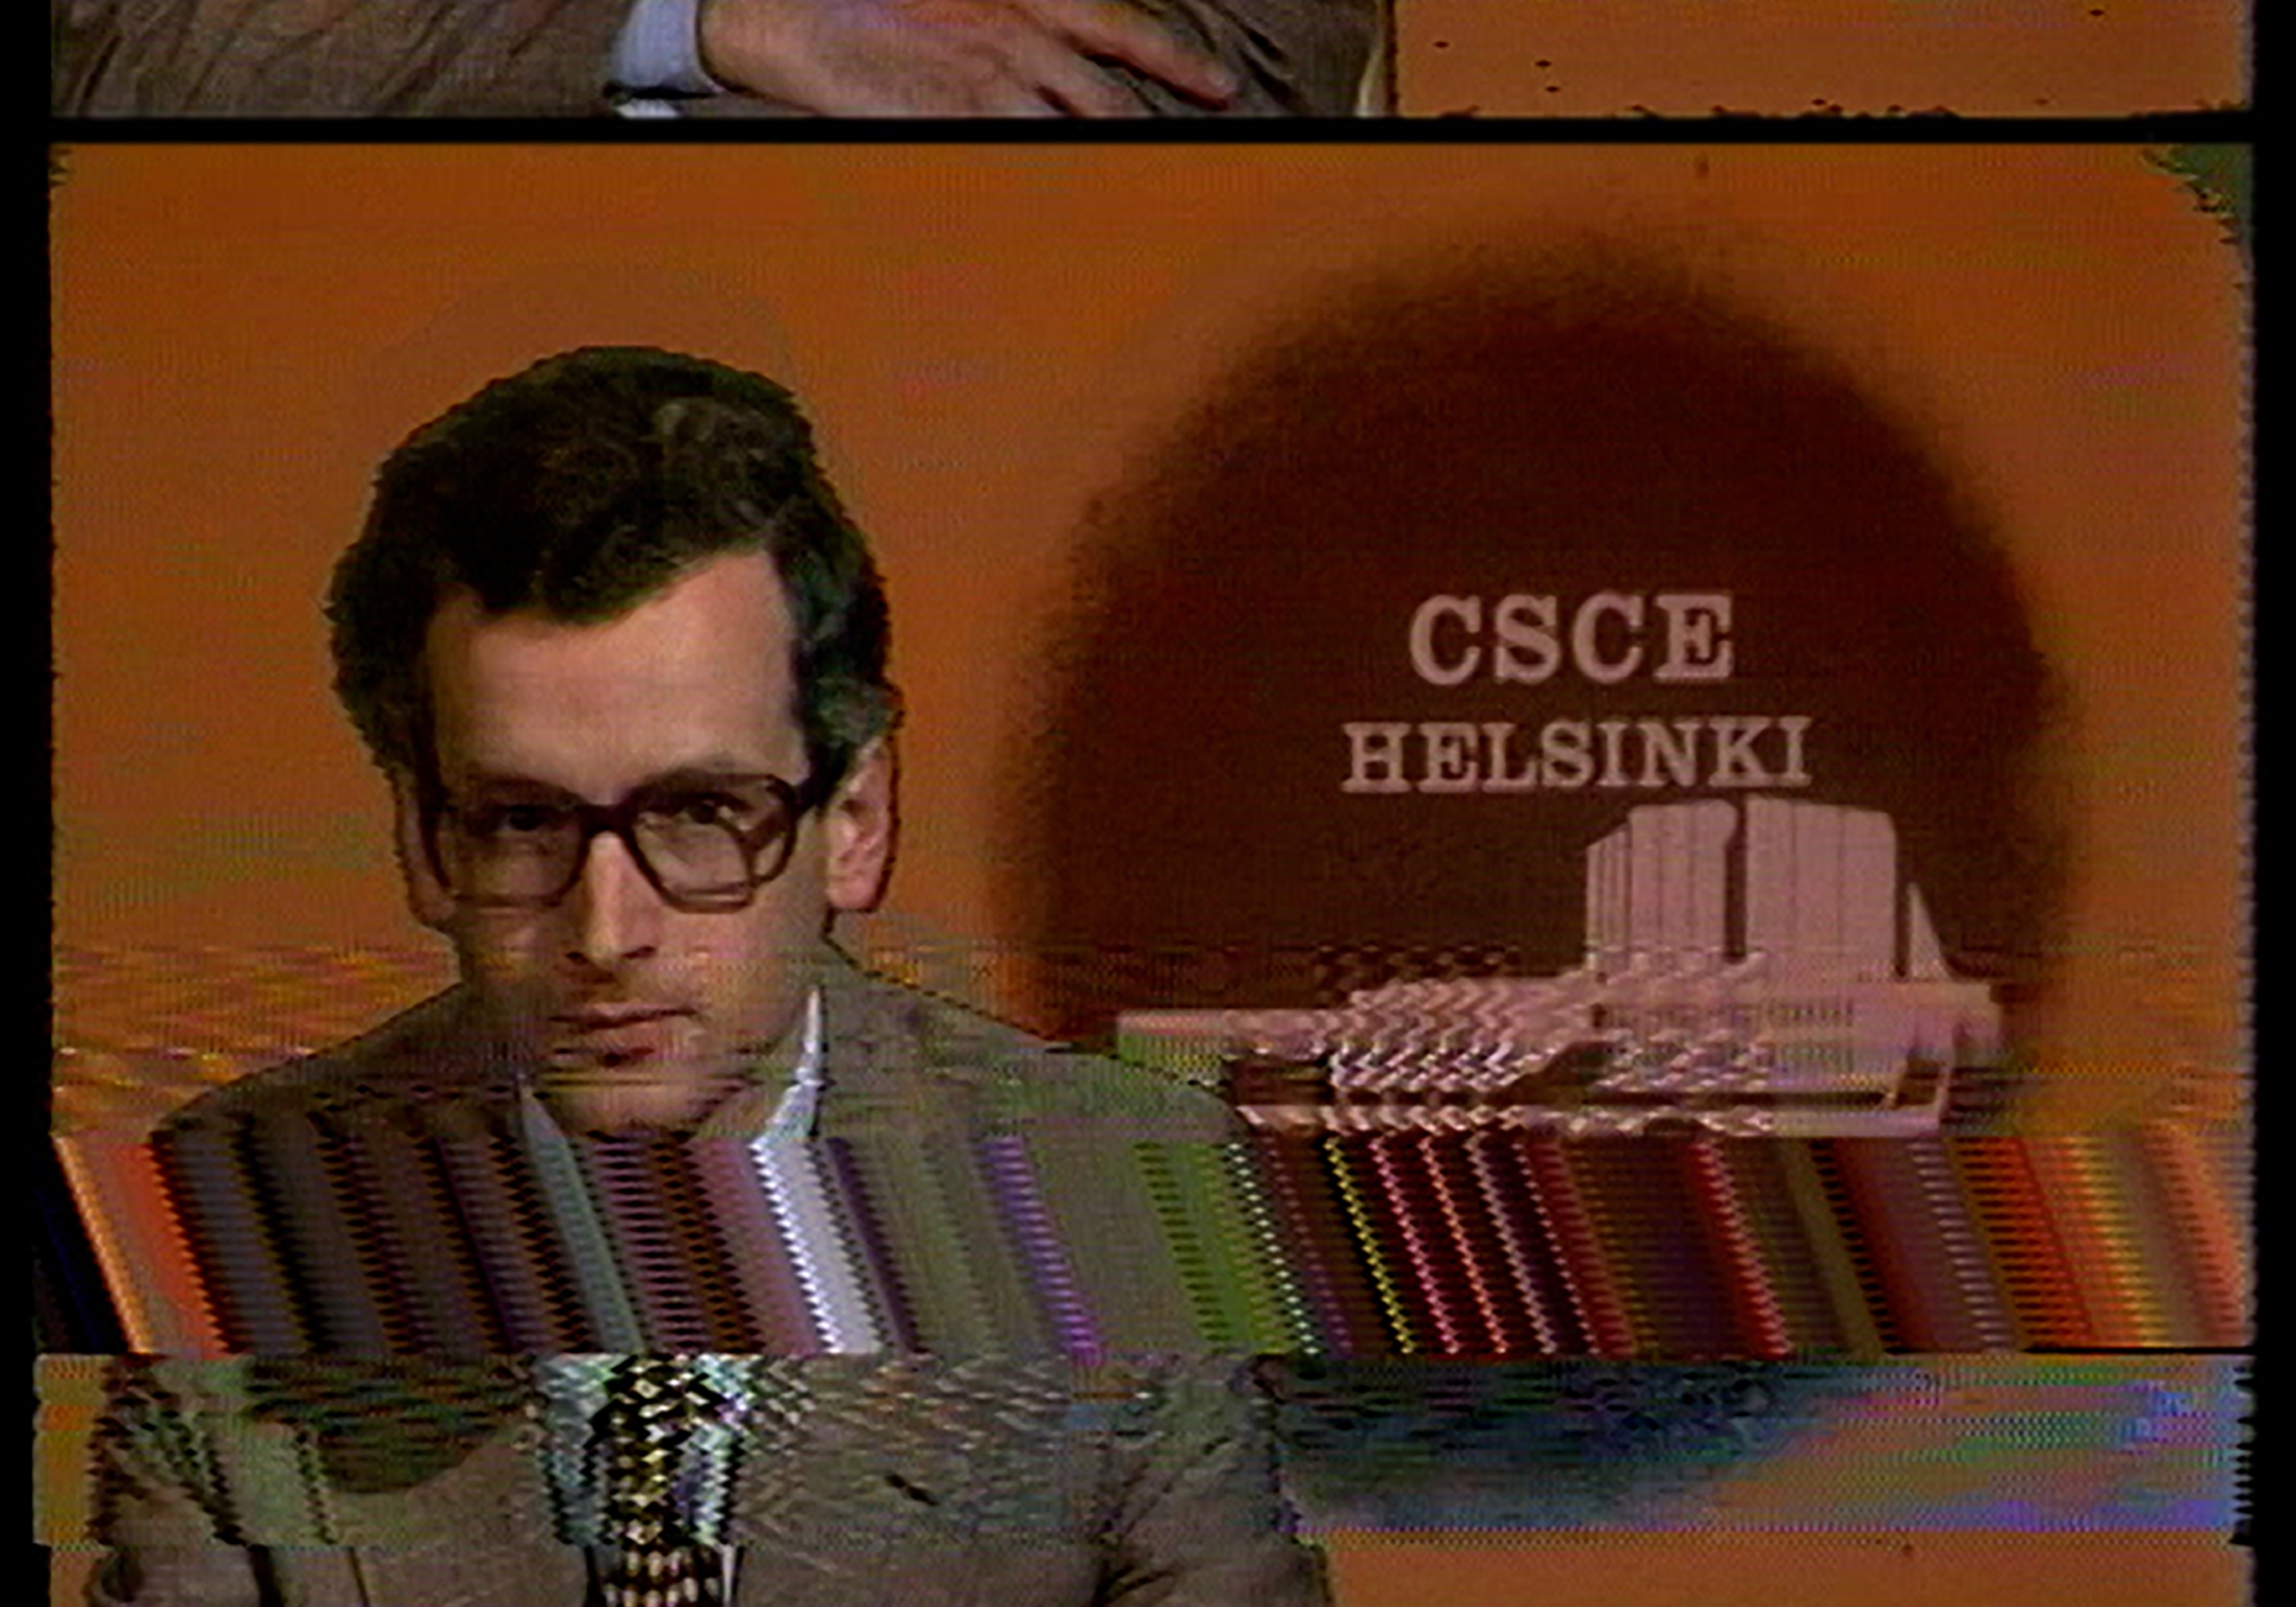 Kuva 1970-luvun uutislähetyksestä. Tummahiuksinen toimittaja katsoo kameraan.